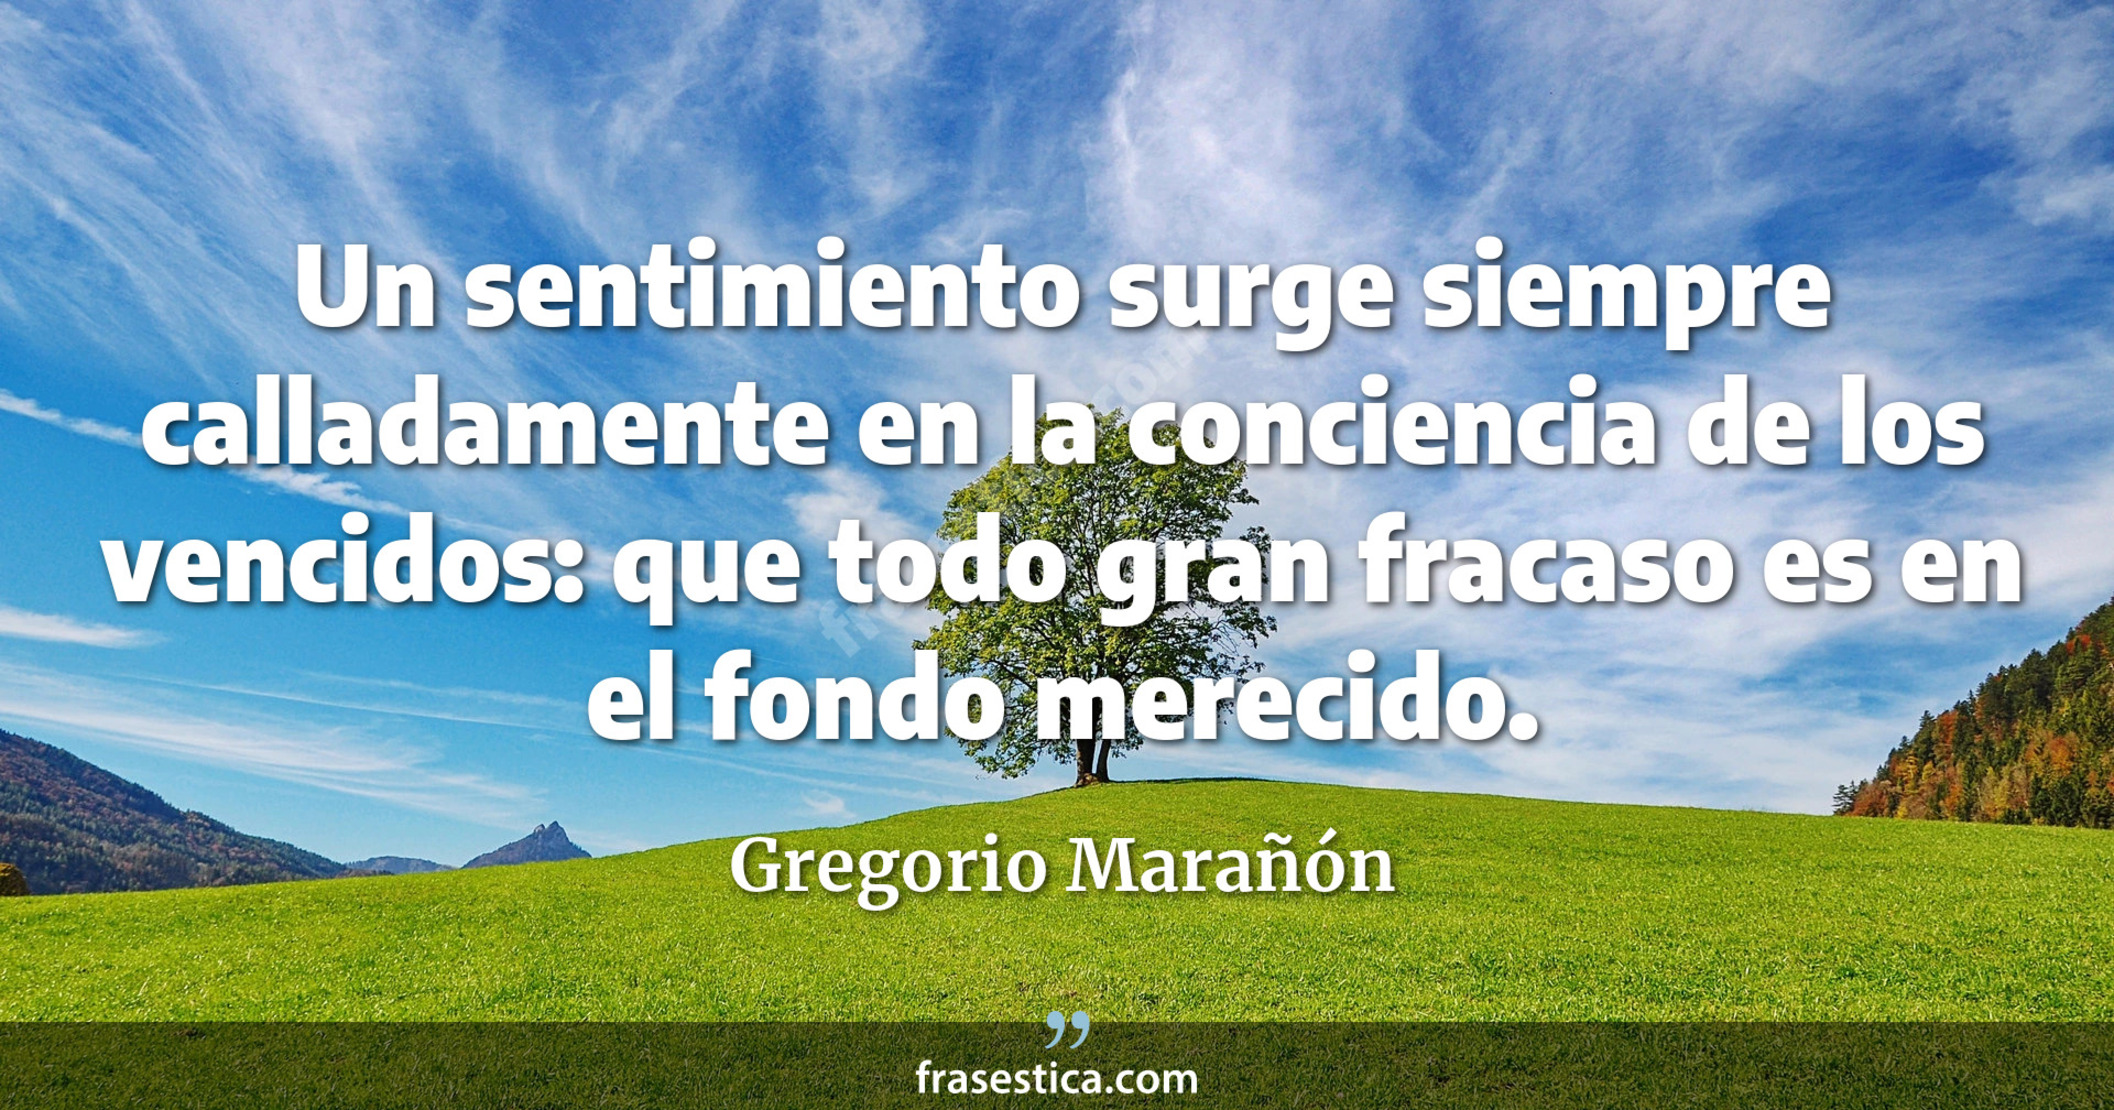 Un sentimiento surge siempre calladamente en la conciencia de los vencidos: que todo gran fracaso es en el fondo merecido. - Gregorio Marañón